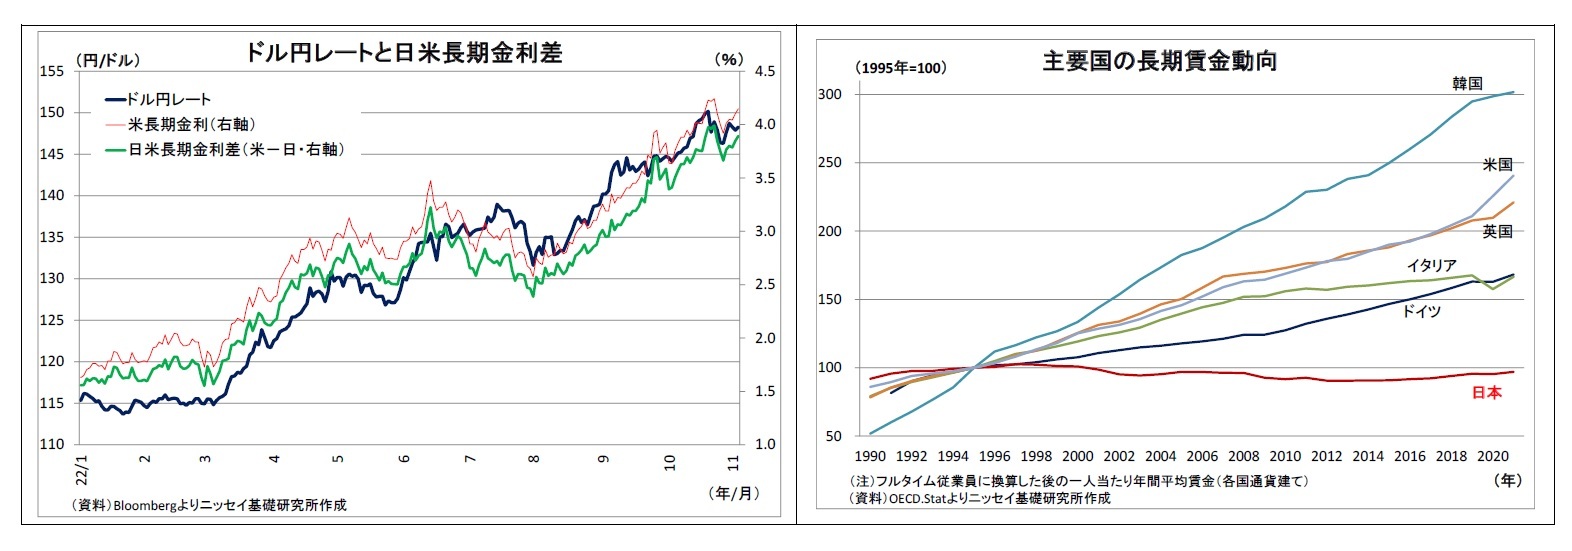 ドル円レートと日米長期金利差/主要国の長期賃金動向